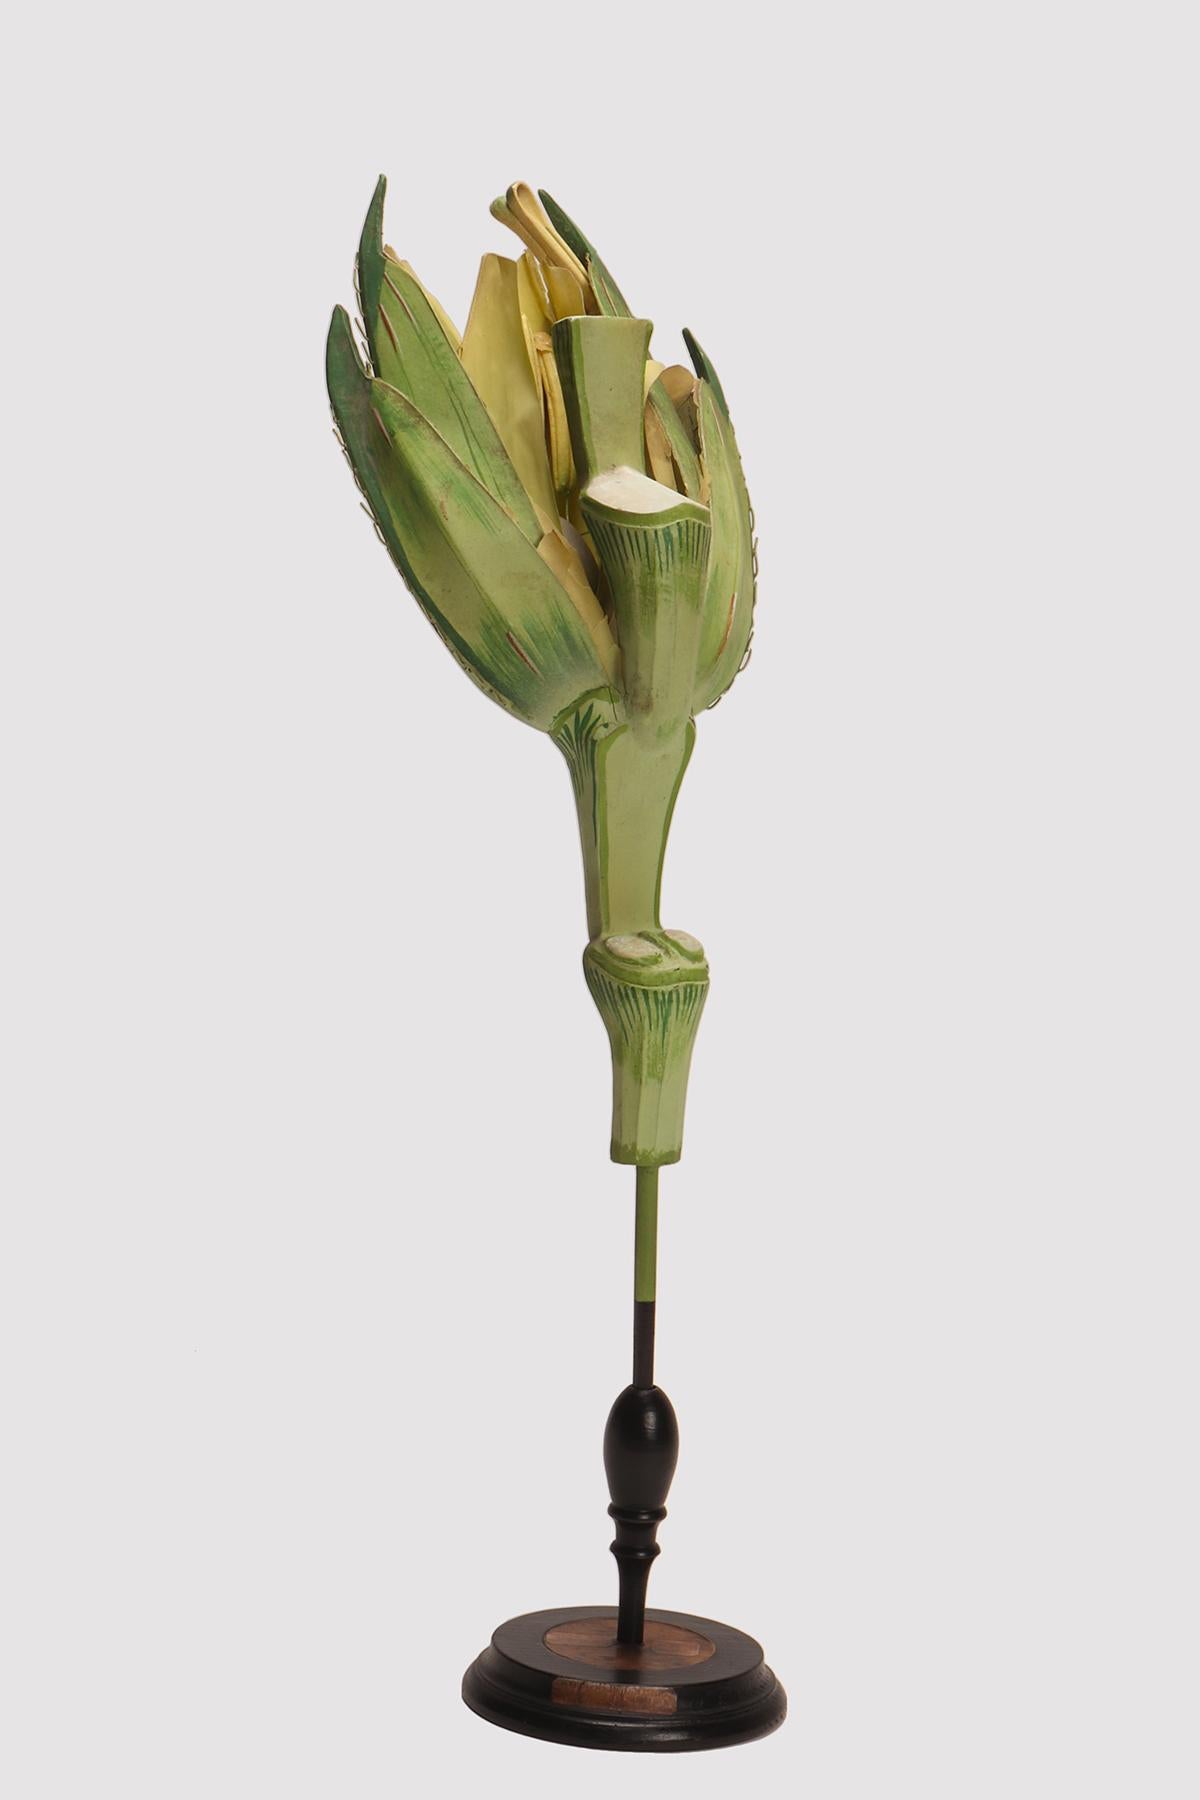 Ein botanisch-didaktisches Exemplar, das eine Weizenblüte (Triticum durum) darstellt, hergestellt aus Pappmaché-Holz und Metall mit schwarzem Holzsockel, handbemalt. Äußerst detailliert. Osterloh Modell n.19. Deutschland um 1900.